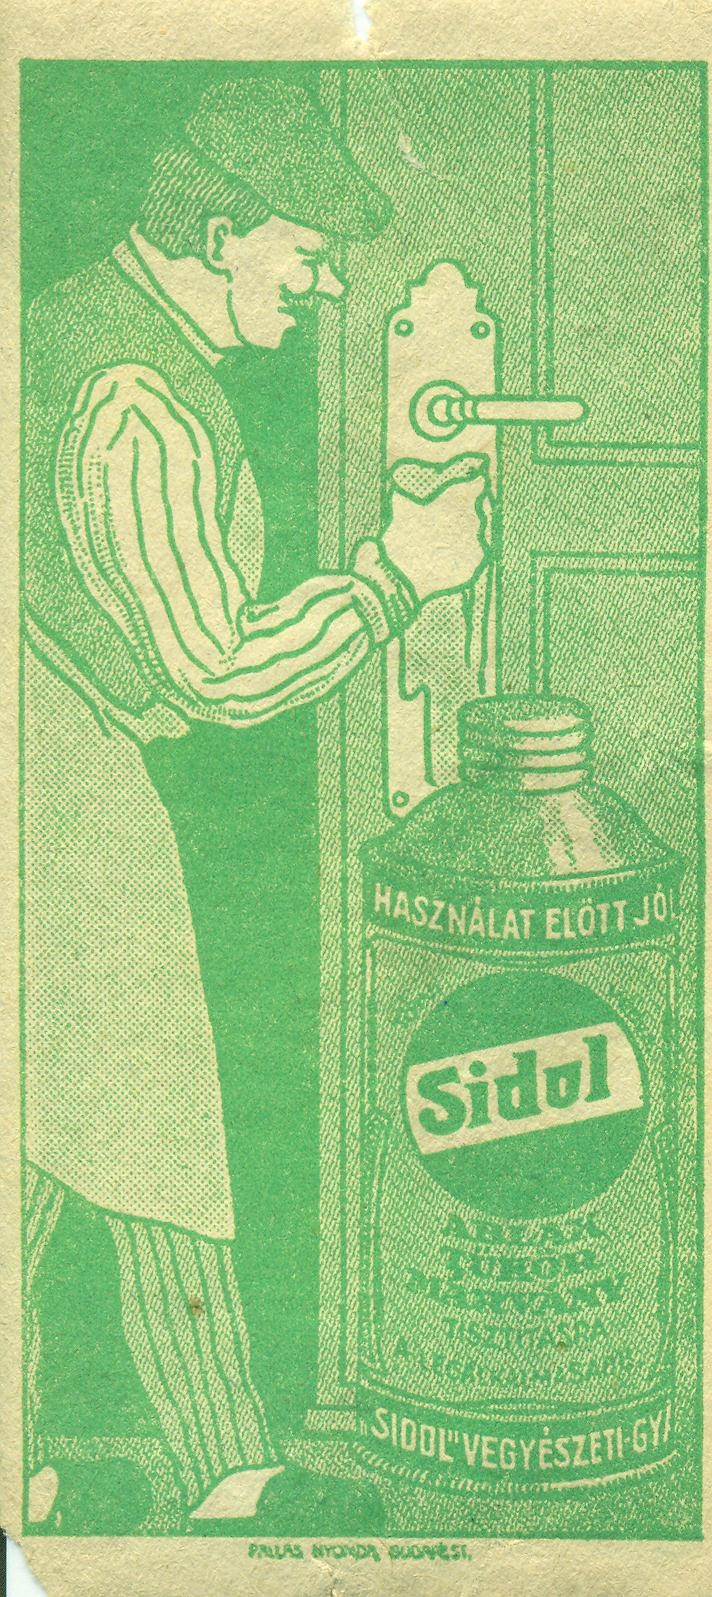 Sidol fényesítő (Magyar Kereskedelmi és Vendéglátóipari Múzeum CC BY-NC-SA)